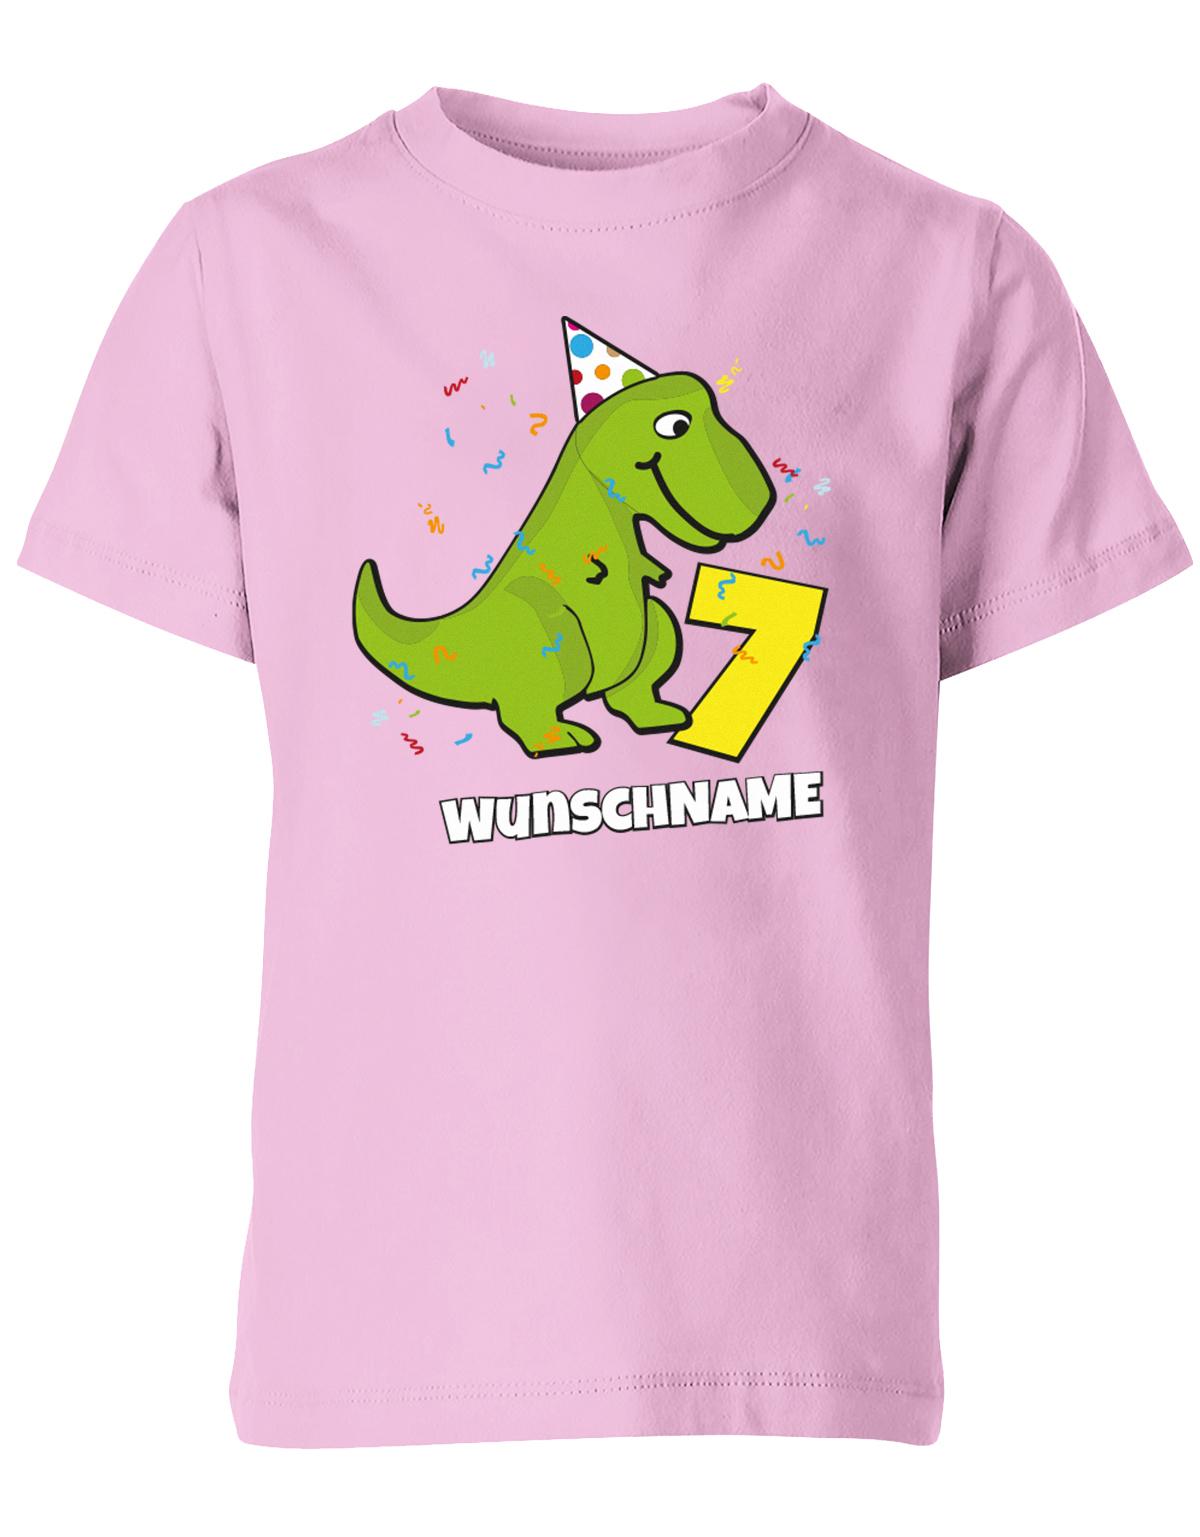 ich-bin-7-Dinosaurier-t-rex-wunschname-geburtstag-kinder-shirt-rosa